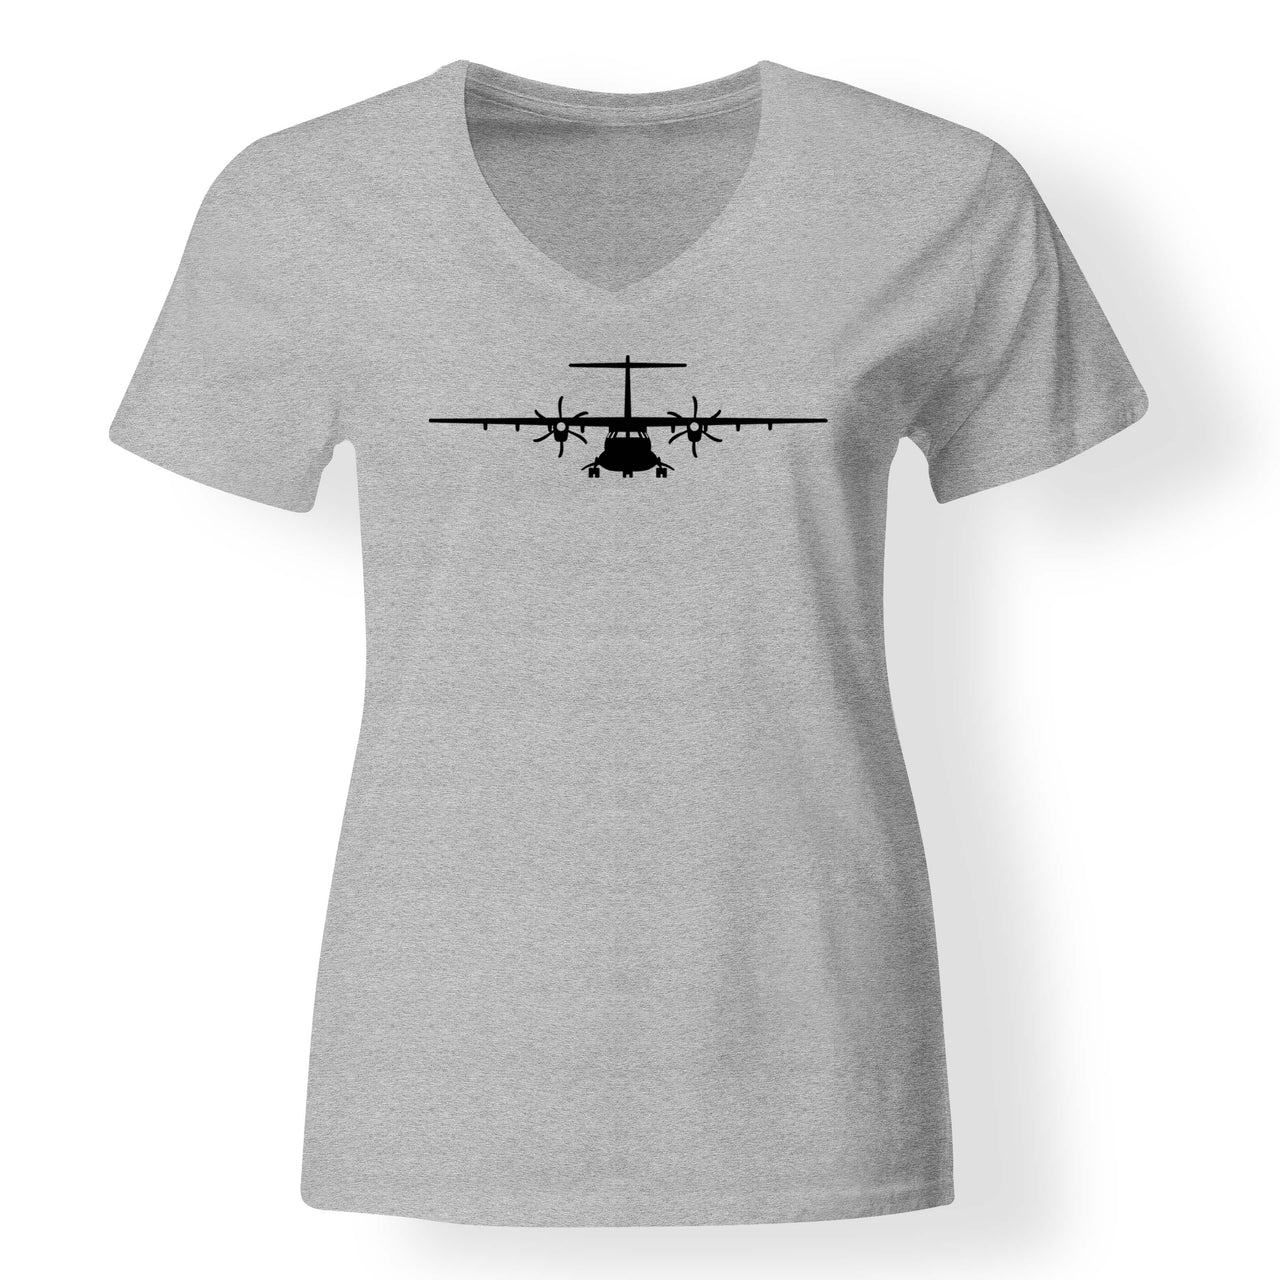 ATR-72 Silhouette Designed V-Neck T-Shirts